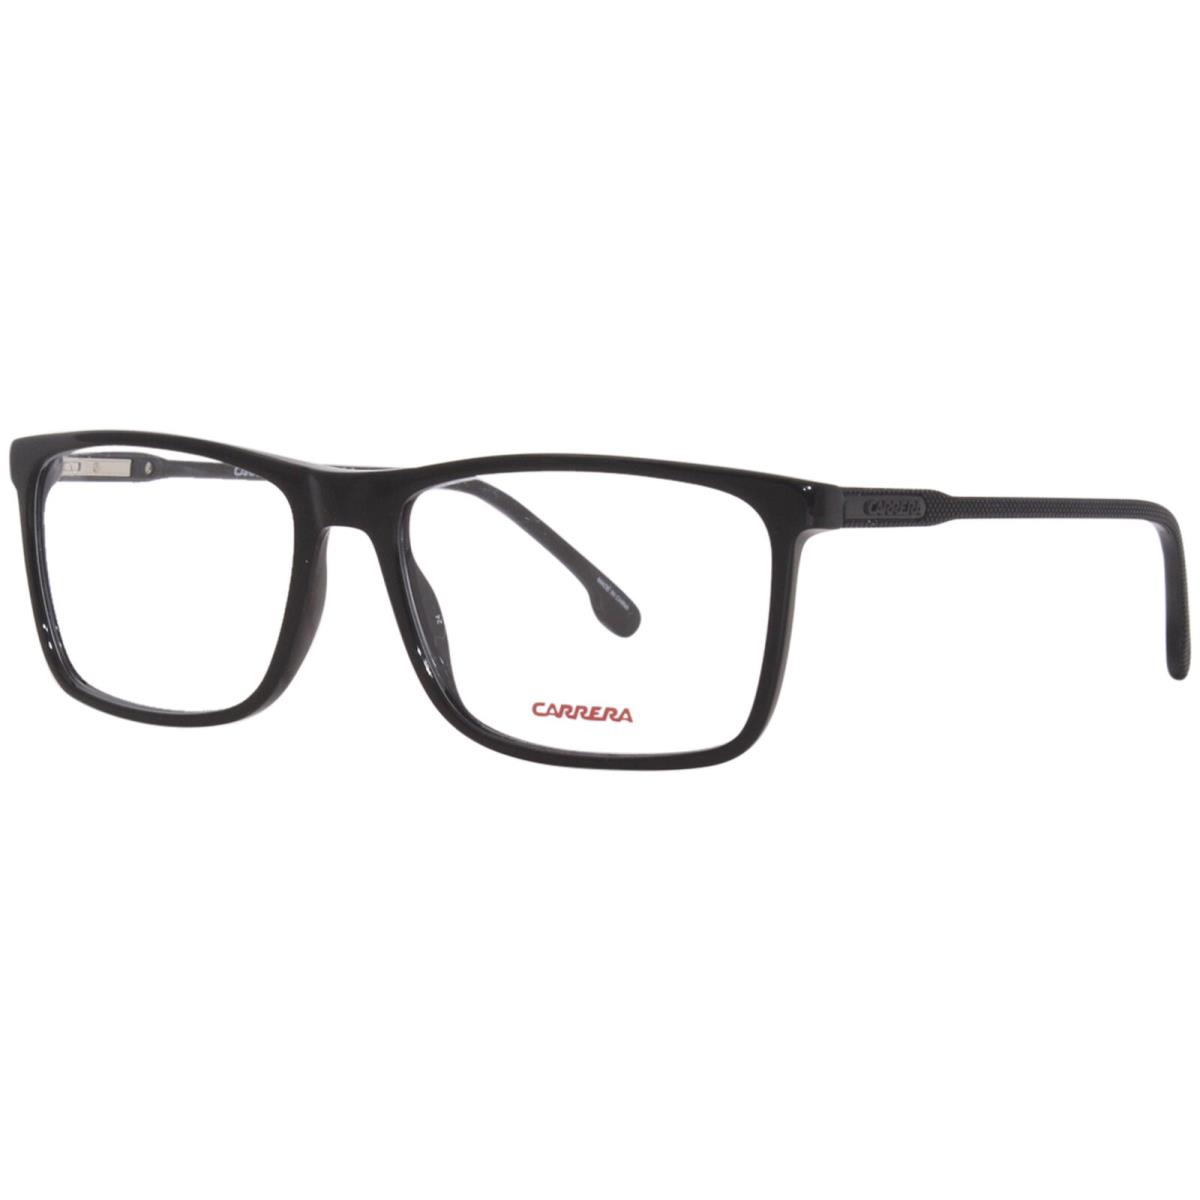 Carrera 225 807 Eyeglasses Frame Men`s Black Full Rim Rectangle Shape 56mm